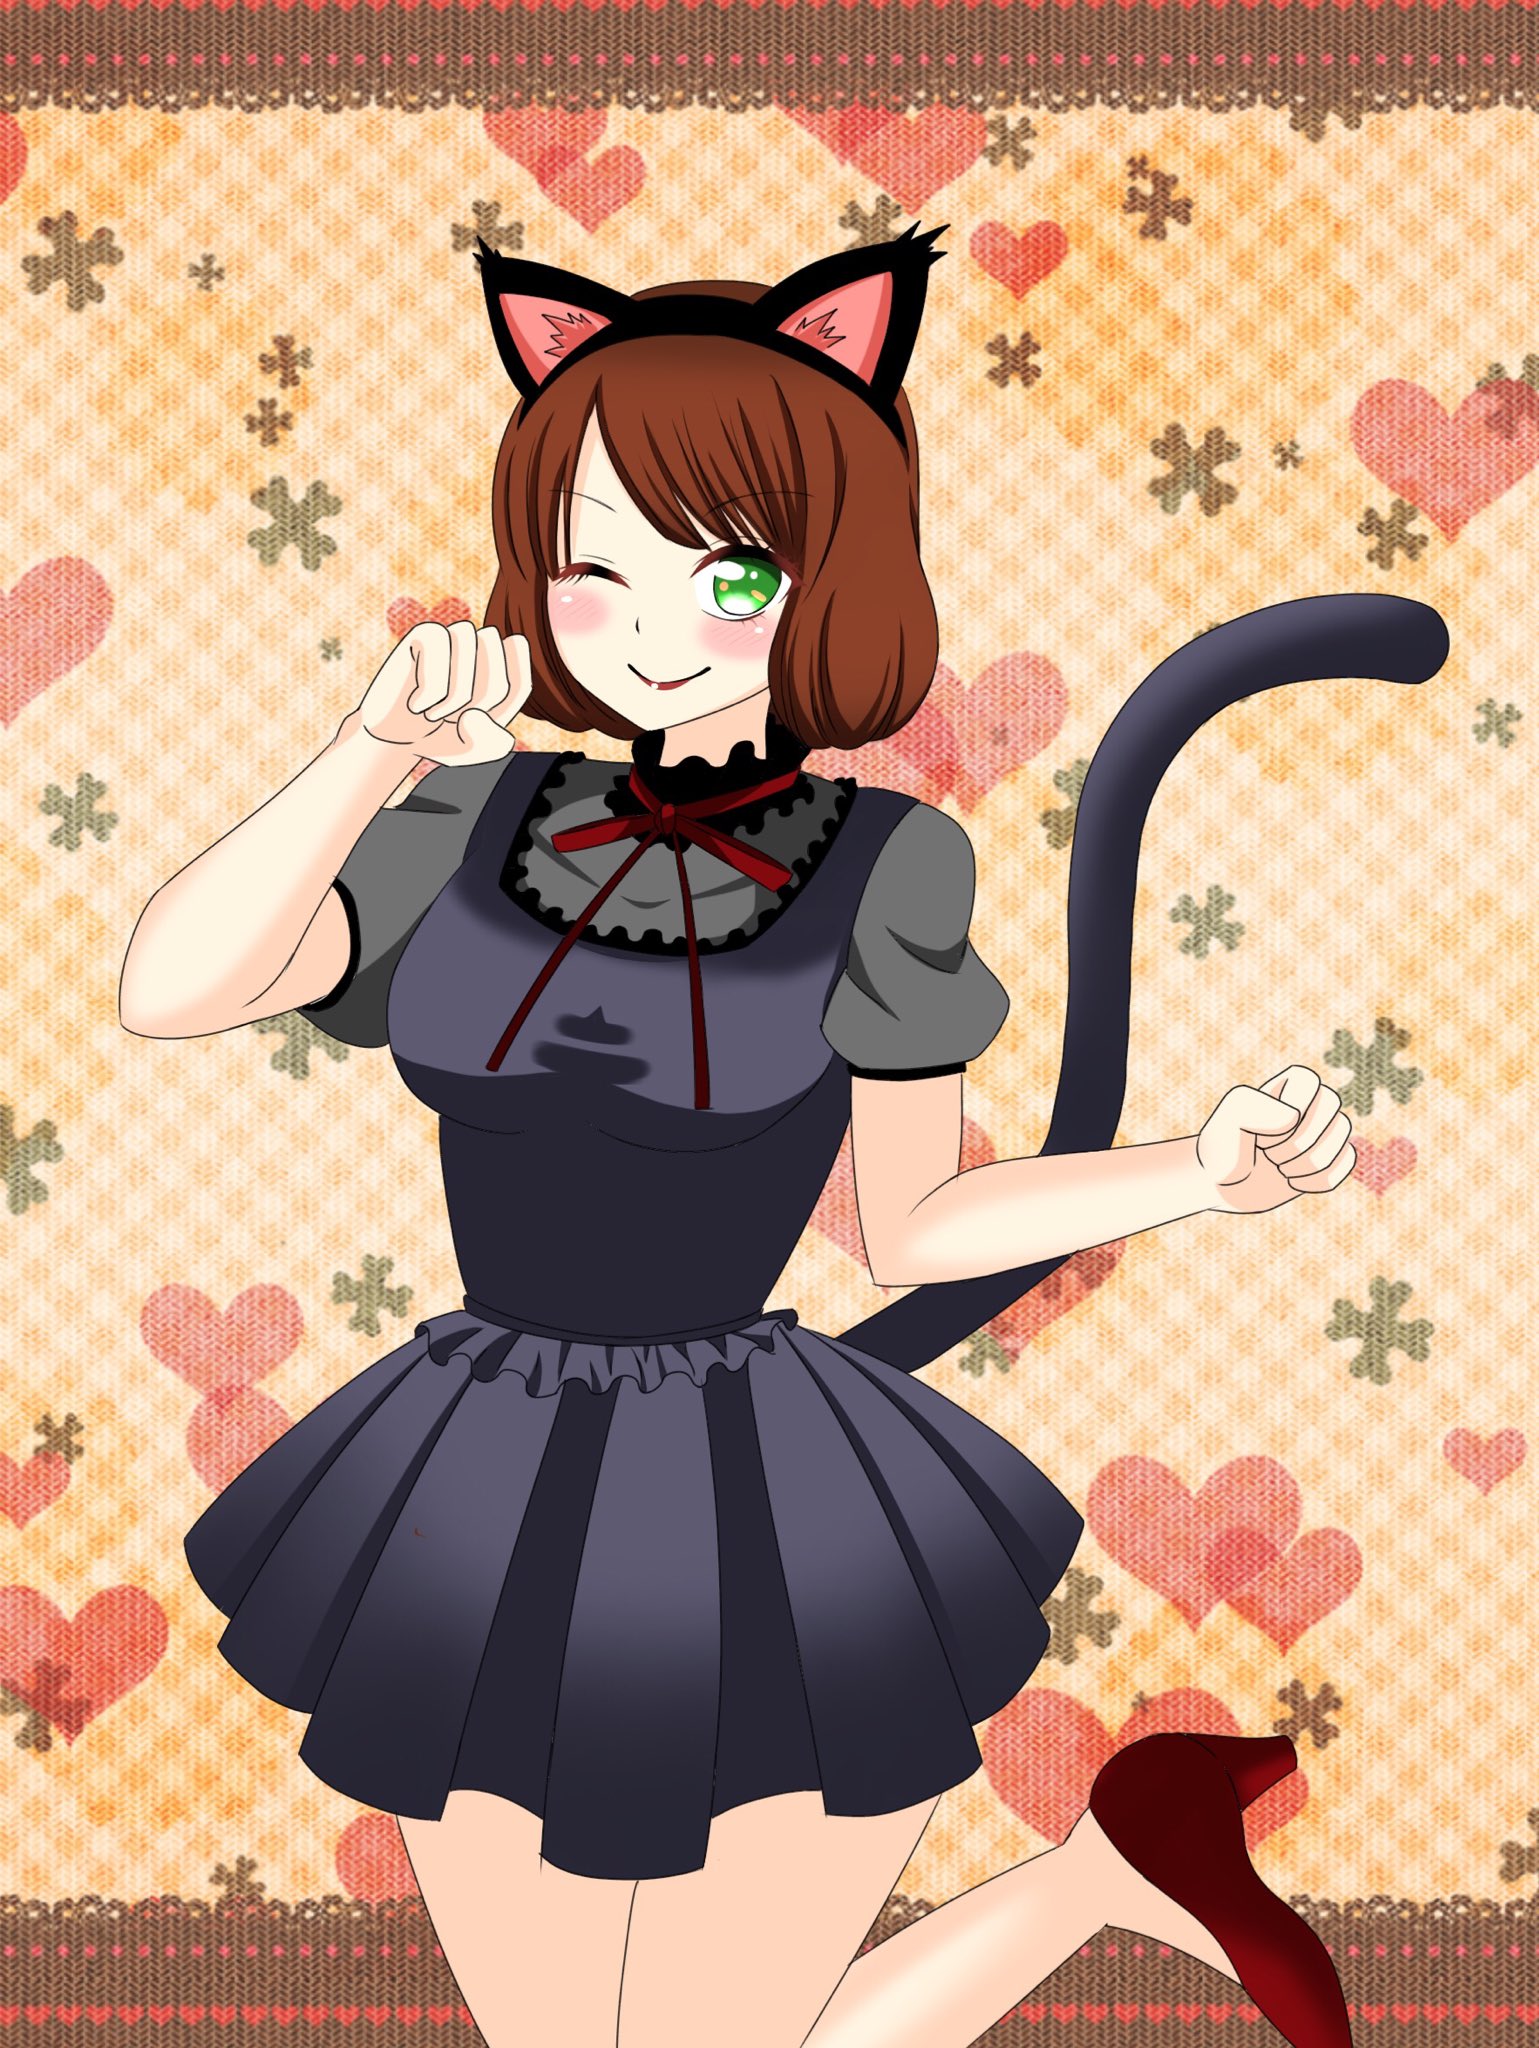 かずきっき Manga Sいらすと 明日はハロウィンということで黒猫の仮装をした女の子を描いてみました 可愛いでしょ ハロウィン 黒猫 仮装 イラスト イラスト大好き イラスト好きと繋がりたい オリジナルキャラクター T Co Z54mgkduul